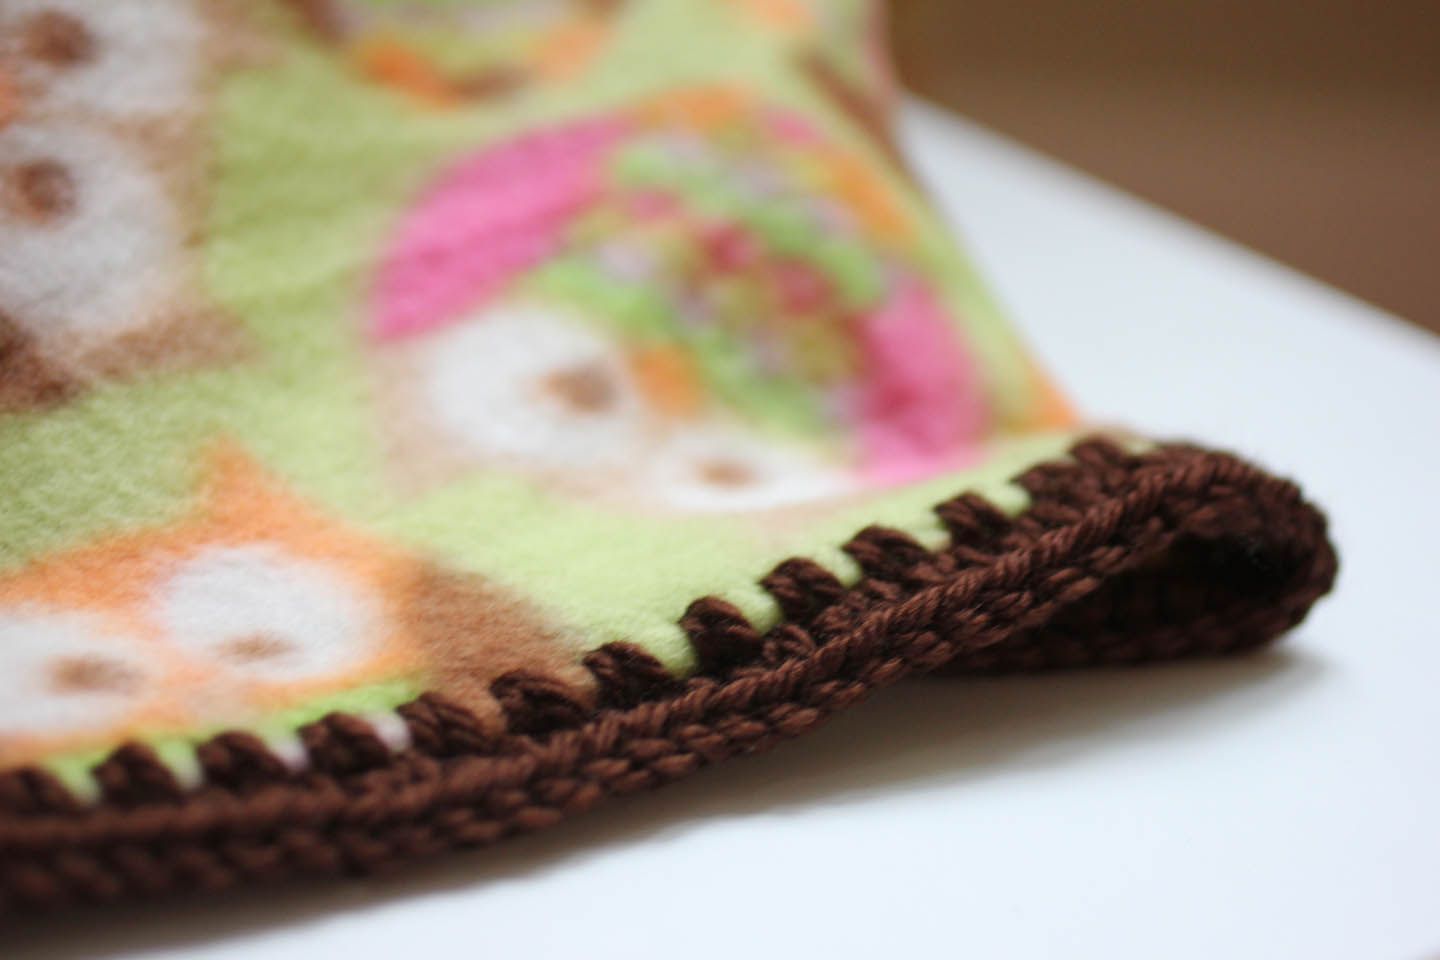 crochet baby blanket tutorial